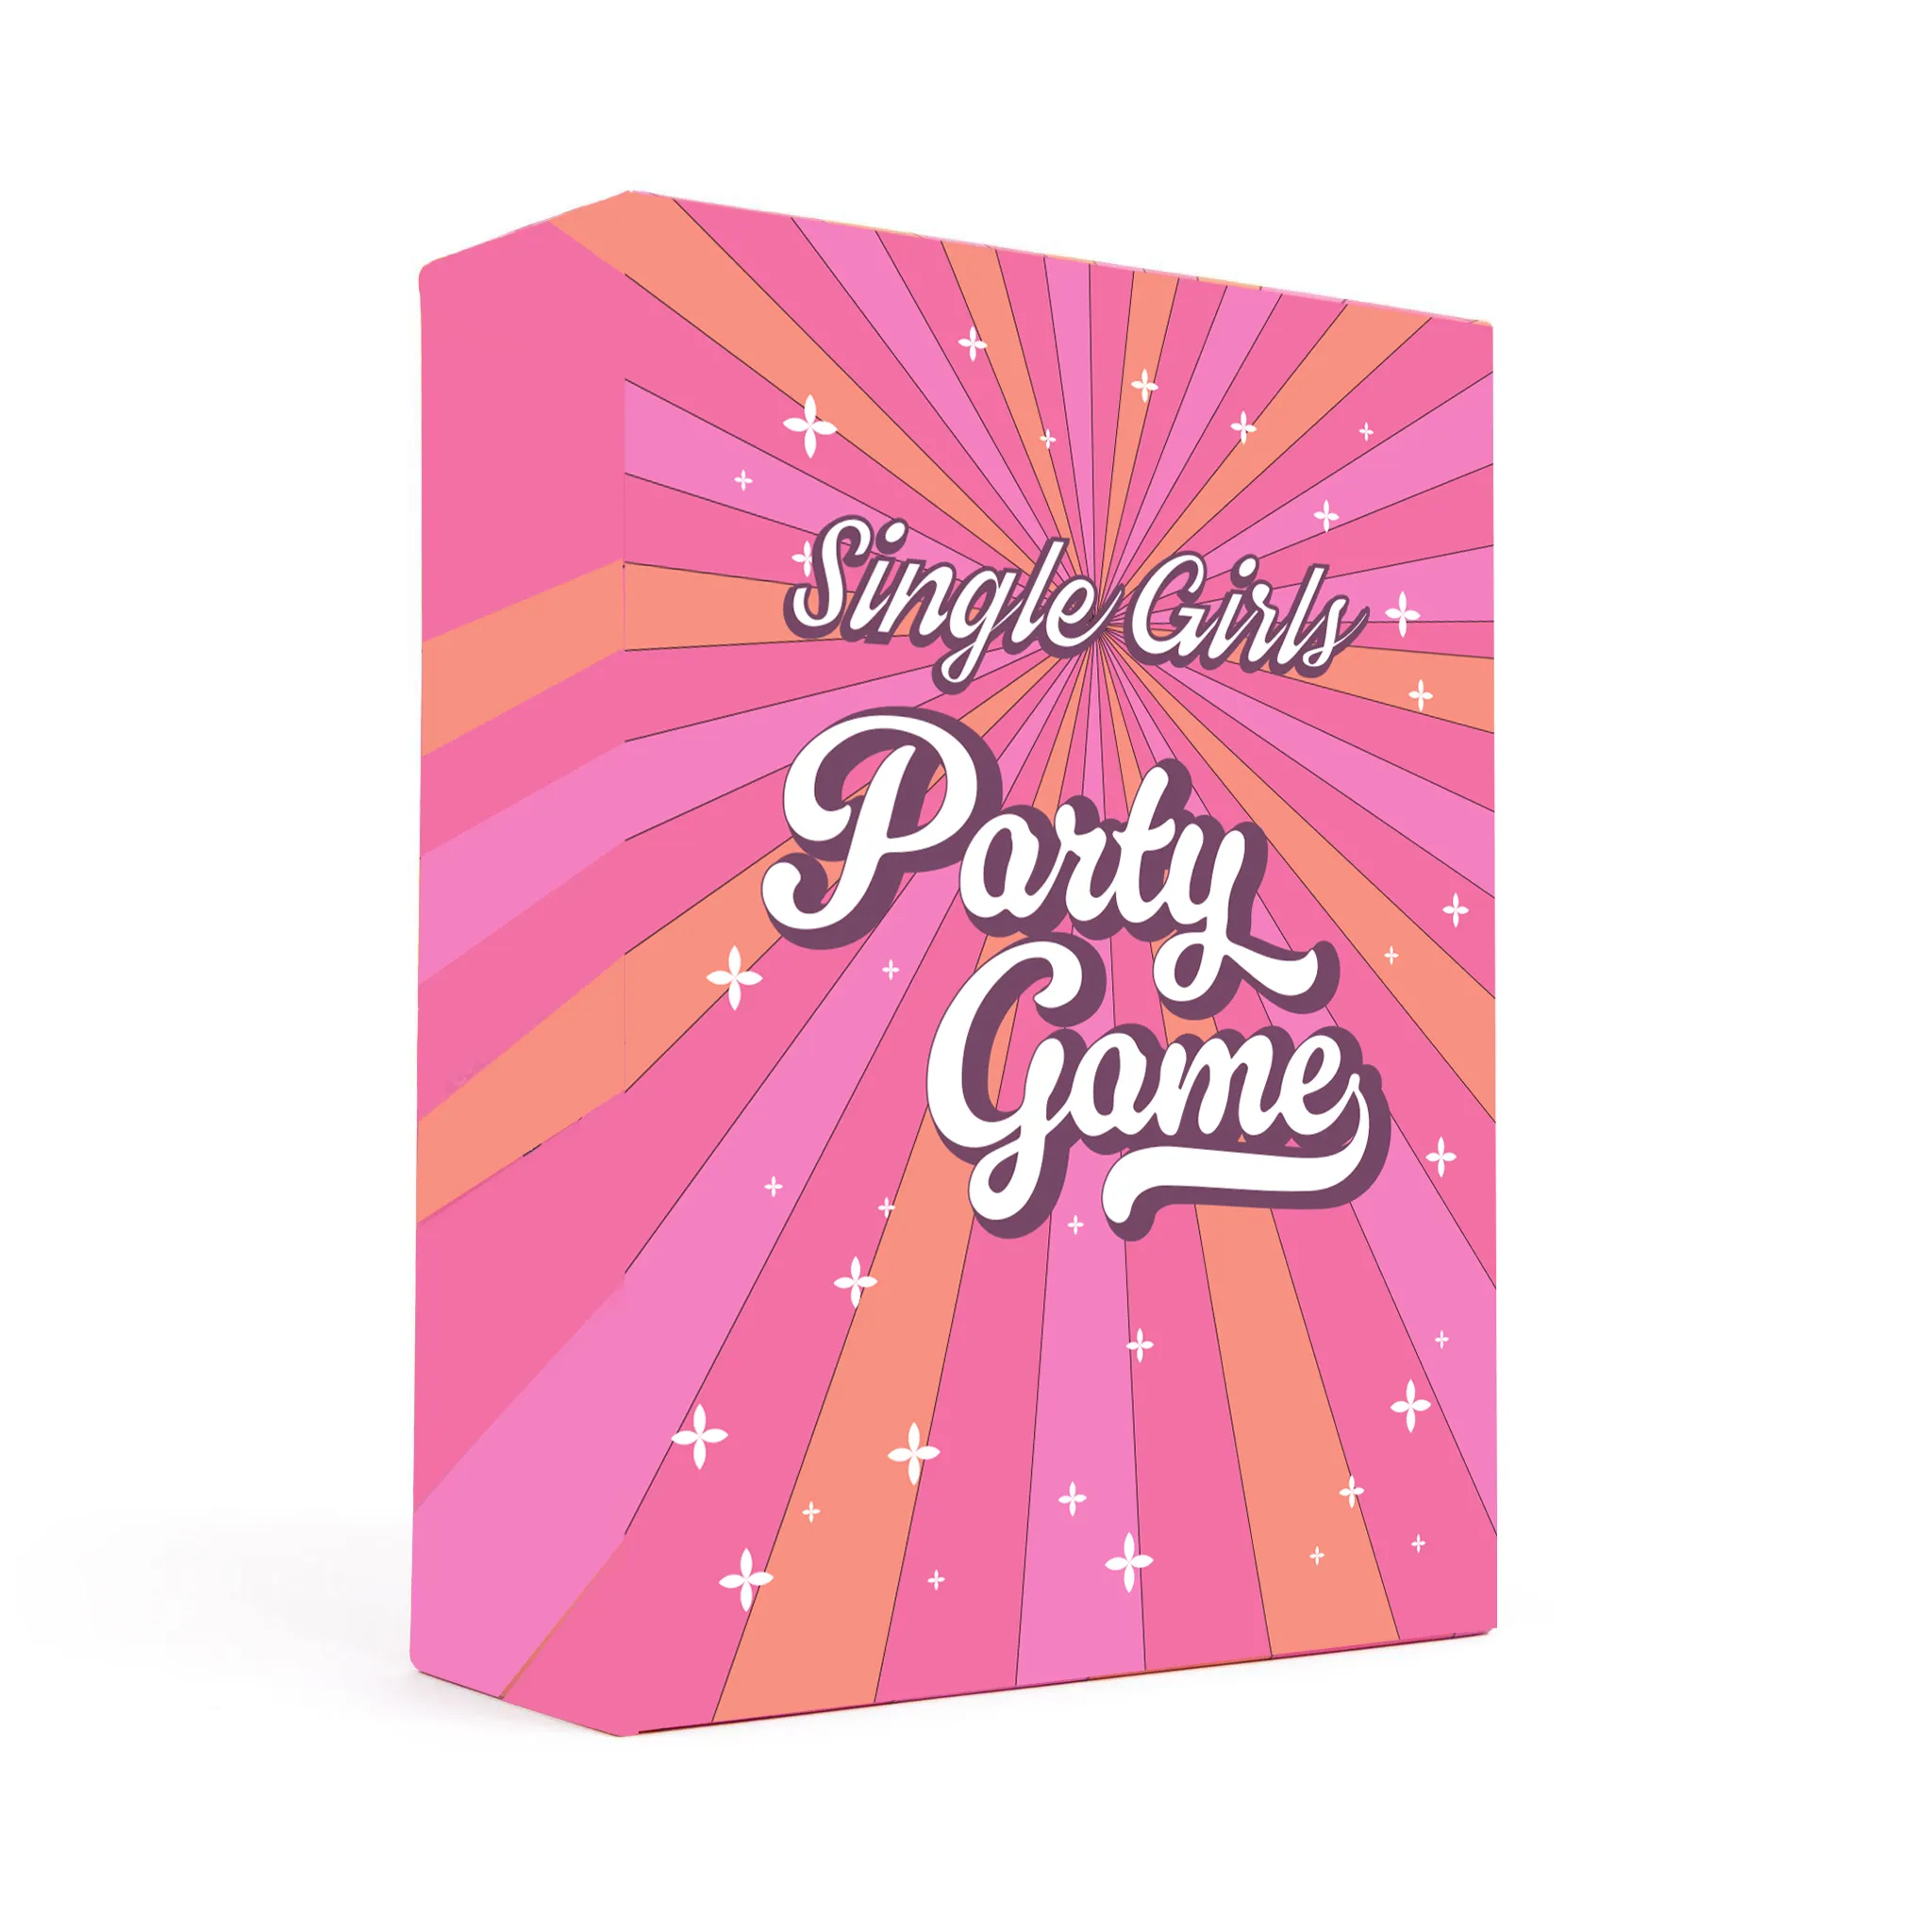 कस्टम प्रिंटिंग सर्विस कार्ड गेम फ्रंट और बैक डबल दोनों तरफ ड्रिंकिंग प्लेइंग सिंगर गर्ल्स गेम कार्ड वयस्कों की पार्टी के लिए